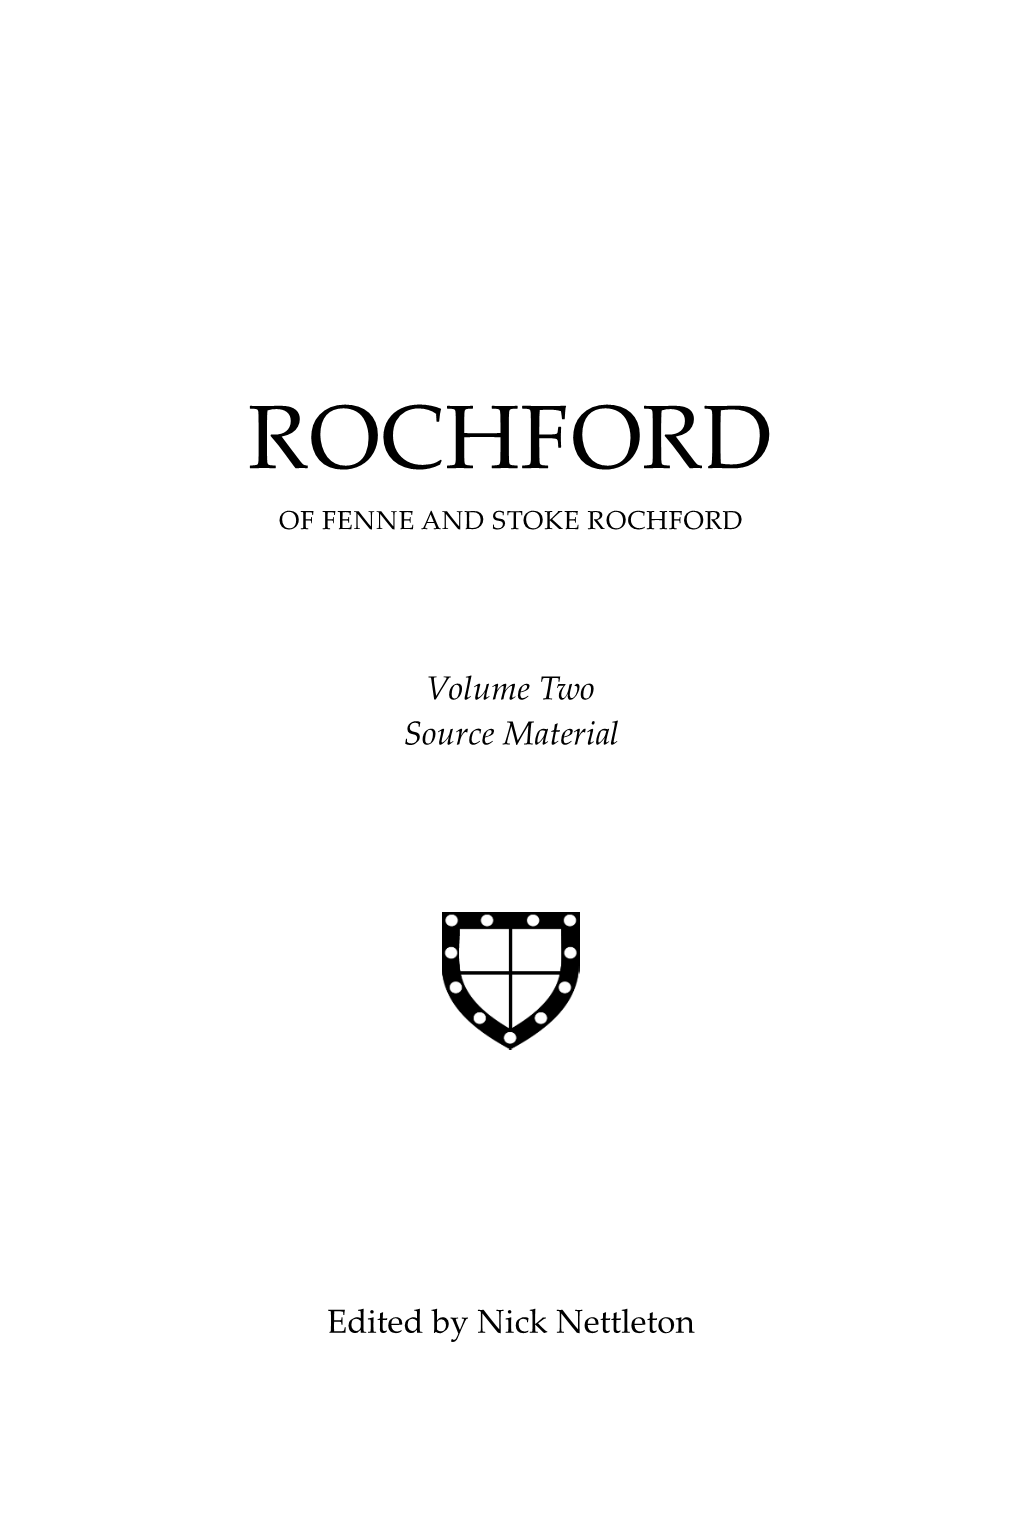 Rochford of Fenne and Stoke Rochford